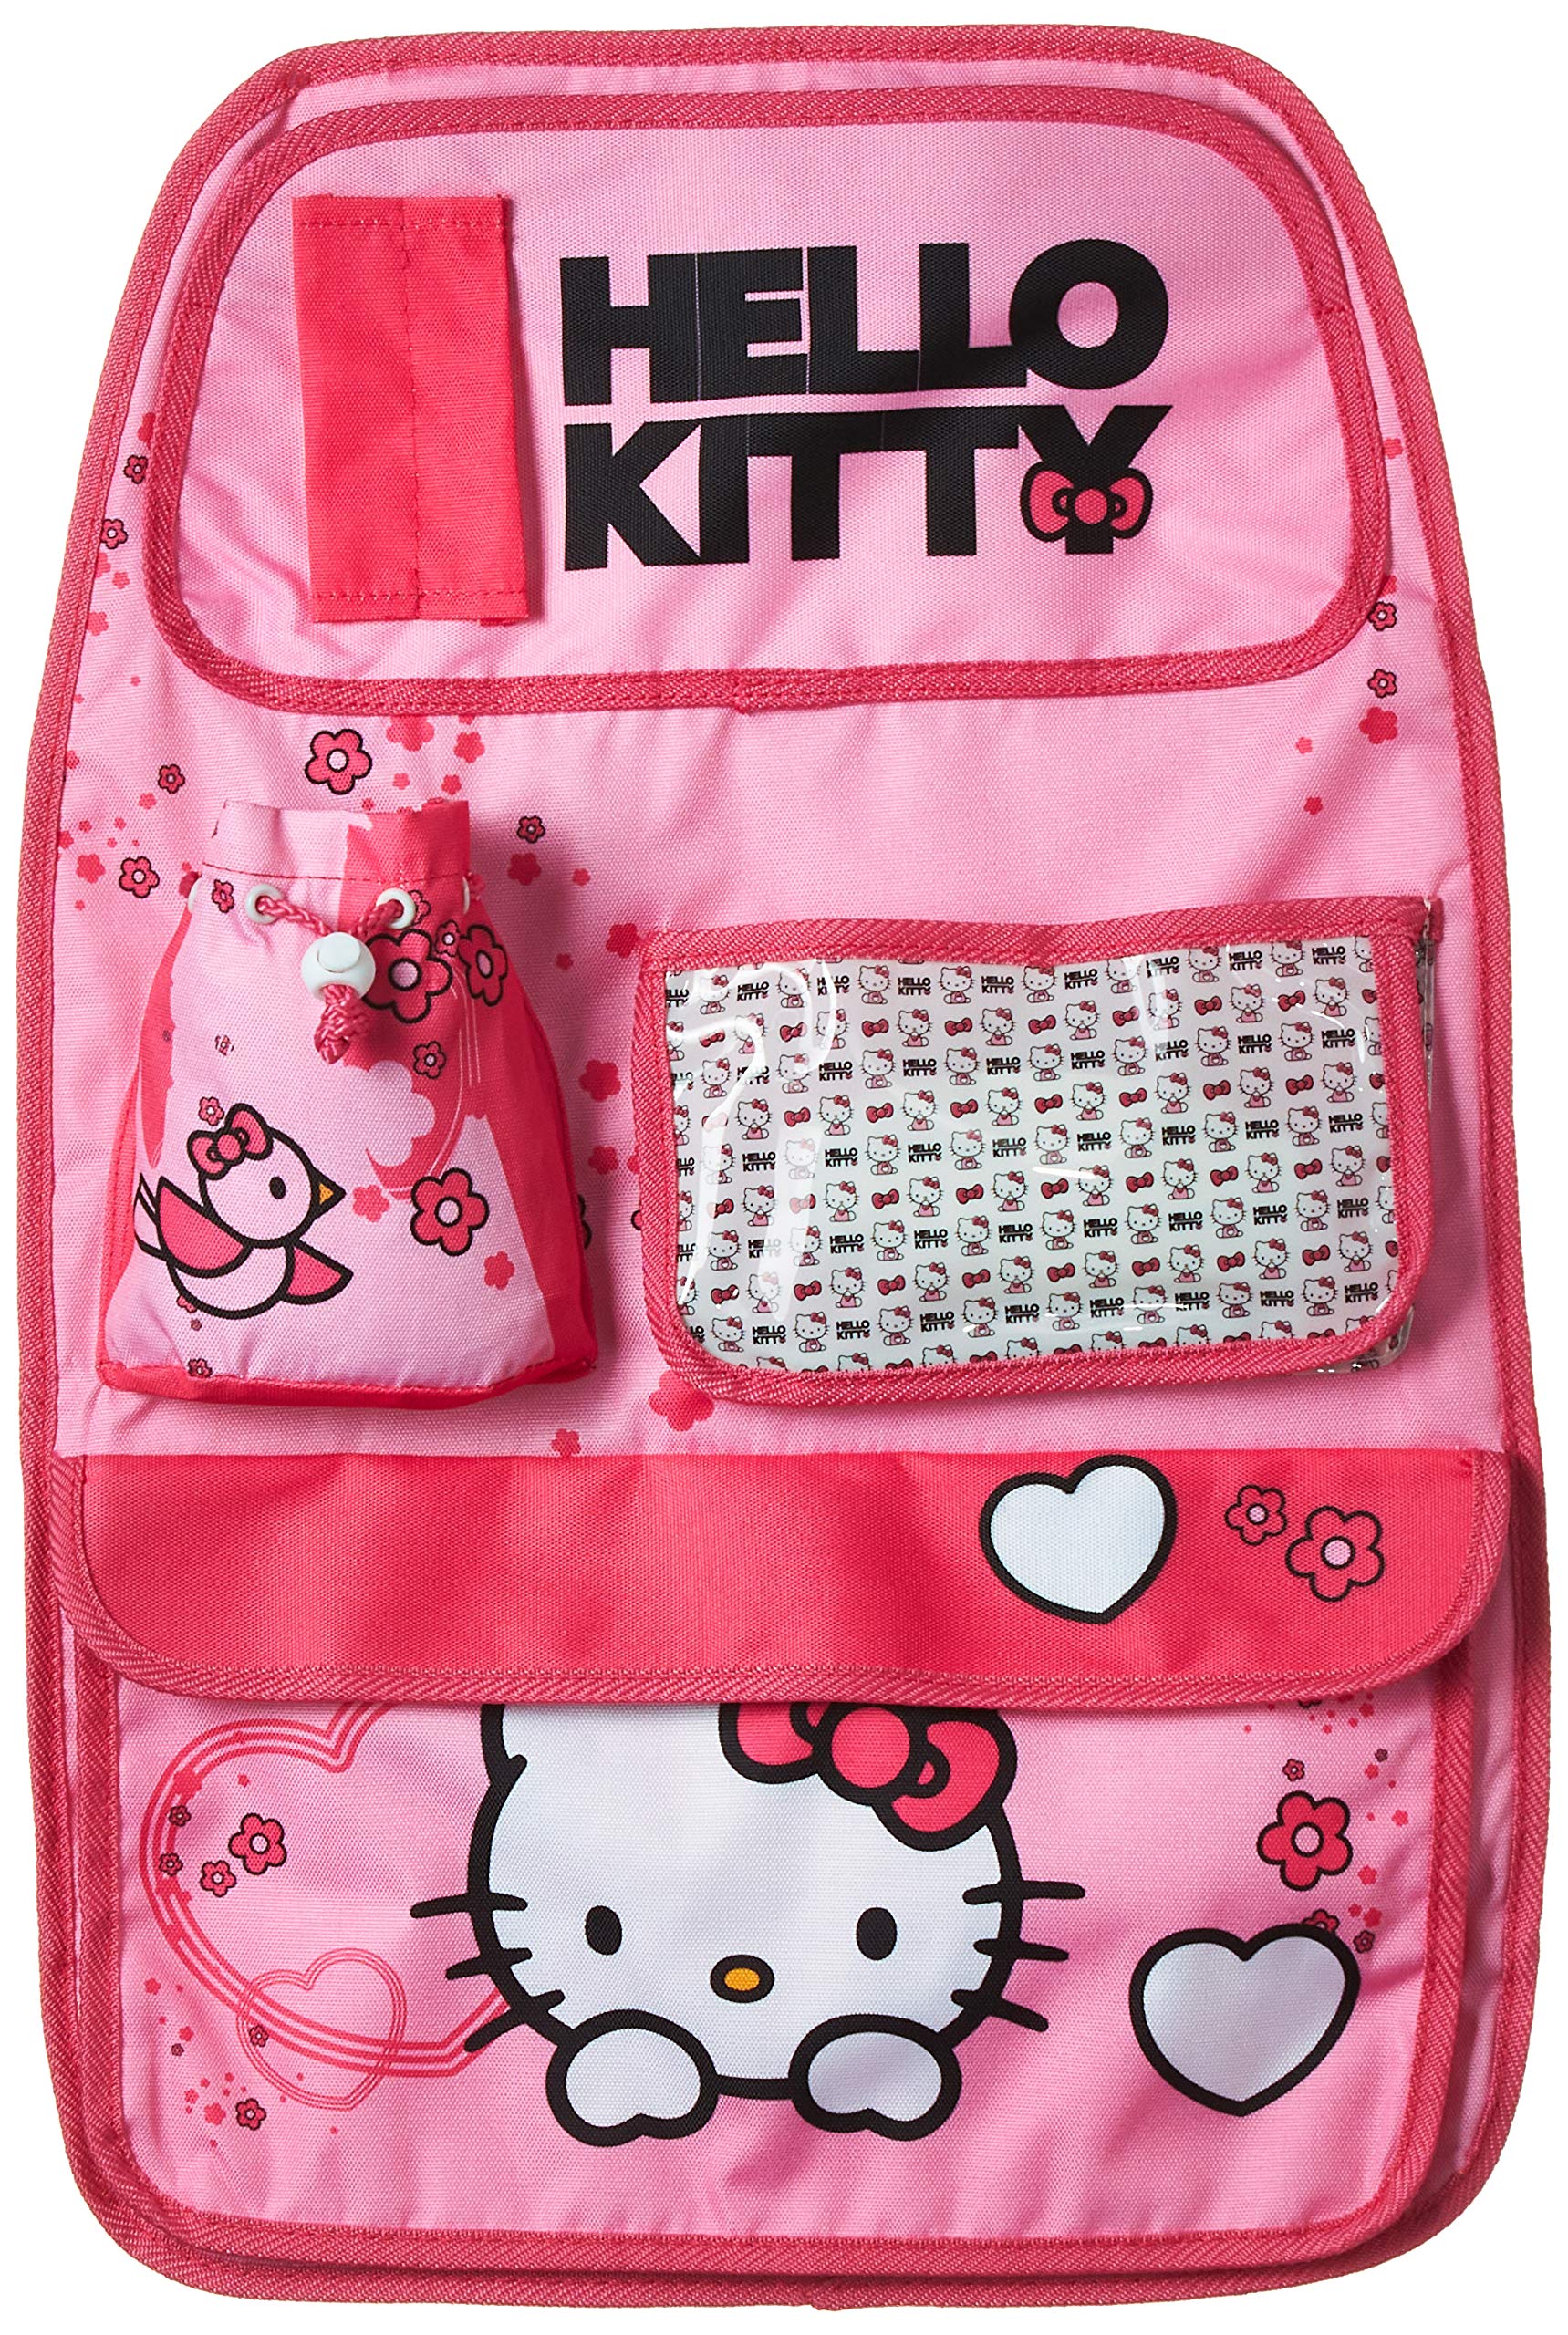 Kaufmann Neuheiten HKKFZ630 Hello Kitty Spielzeugtasche Bedruckt von Hello Kitty